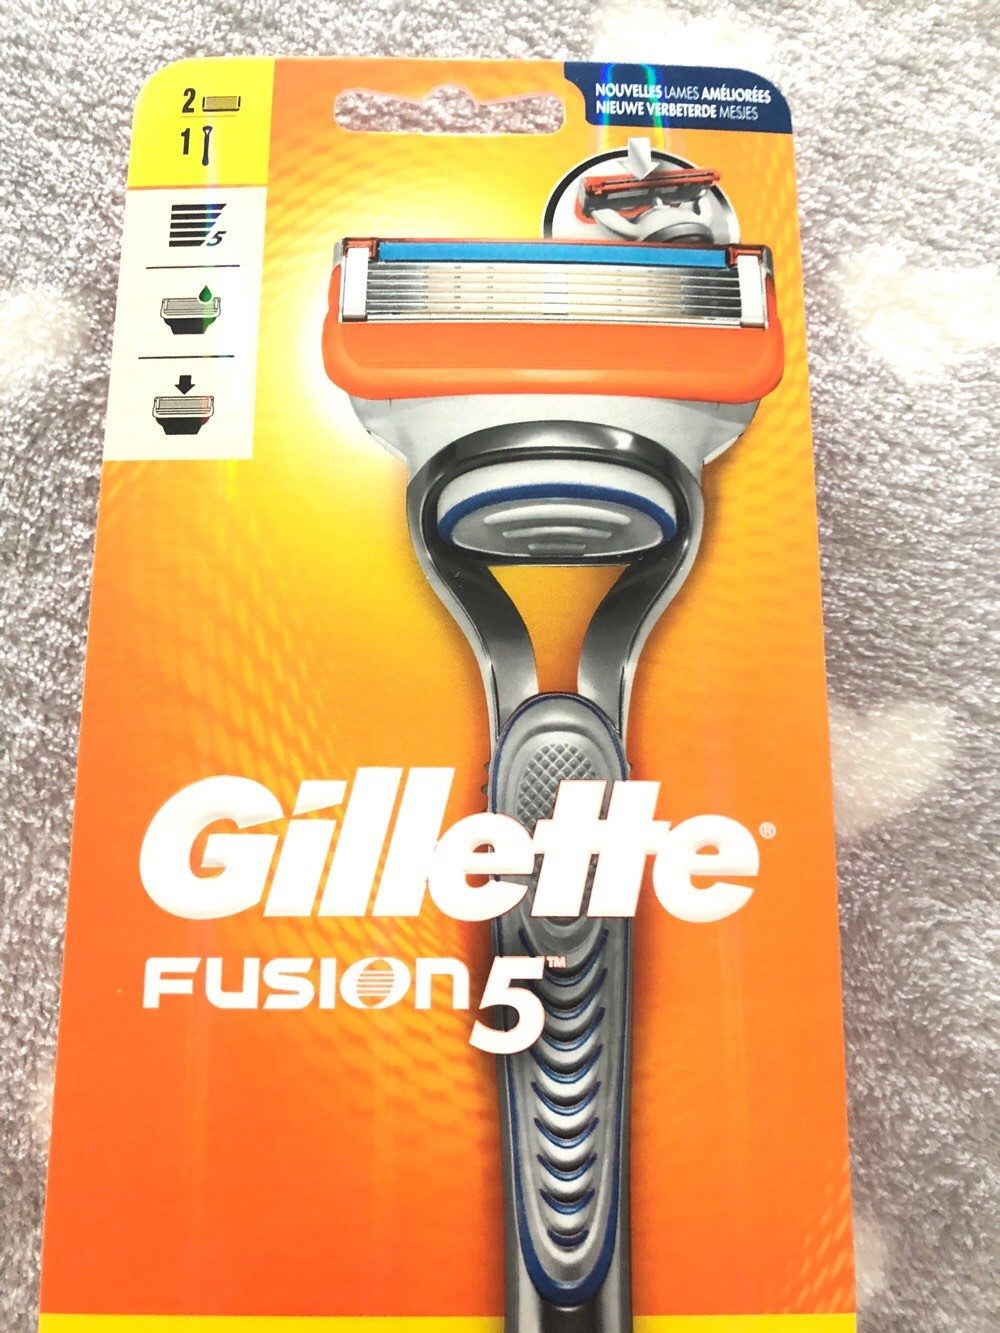 Gillette fusion 5 rasoir - Produto - fr